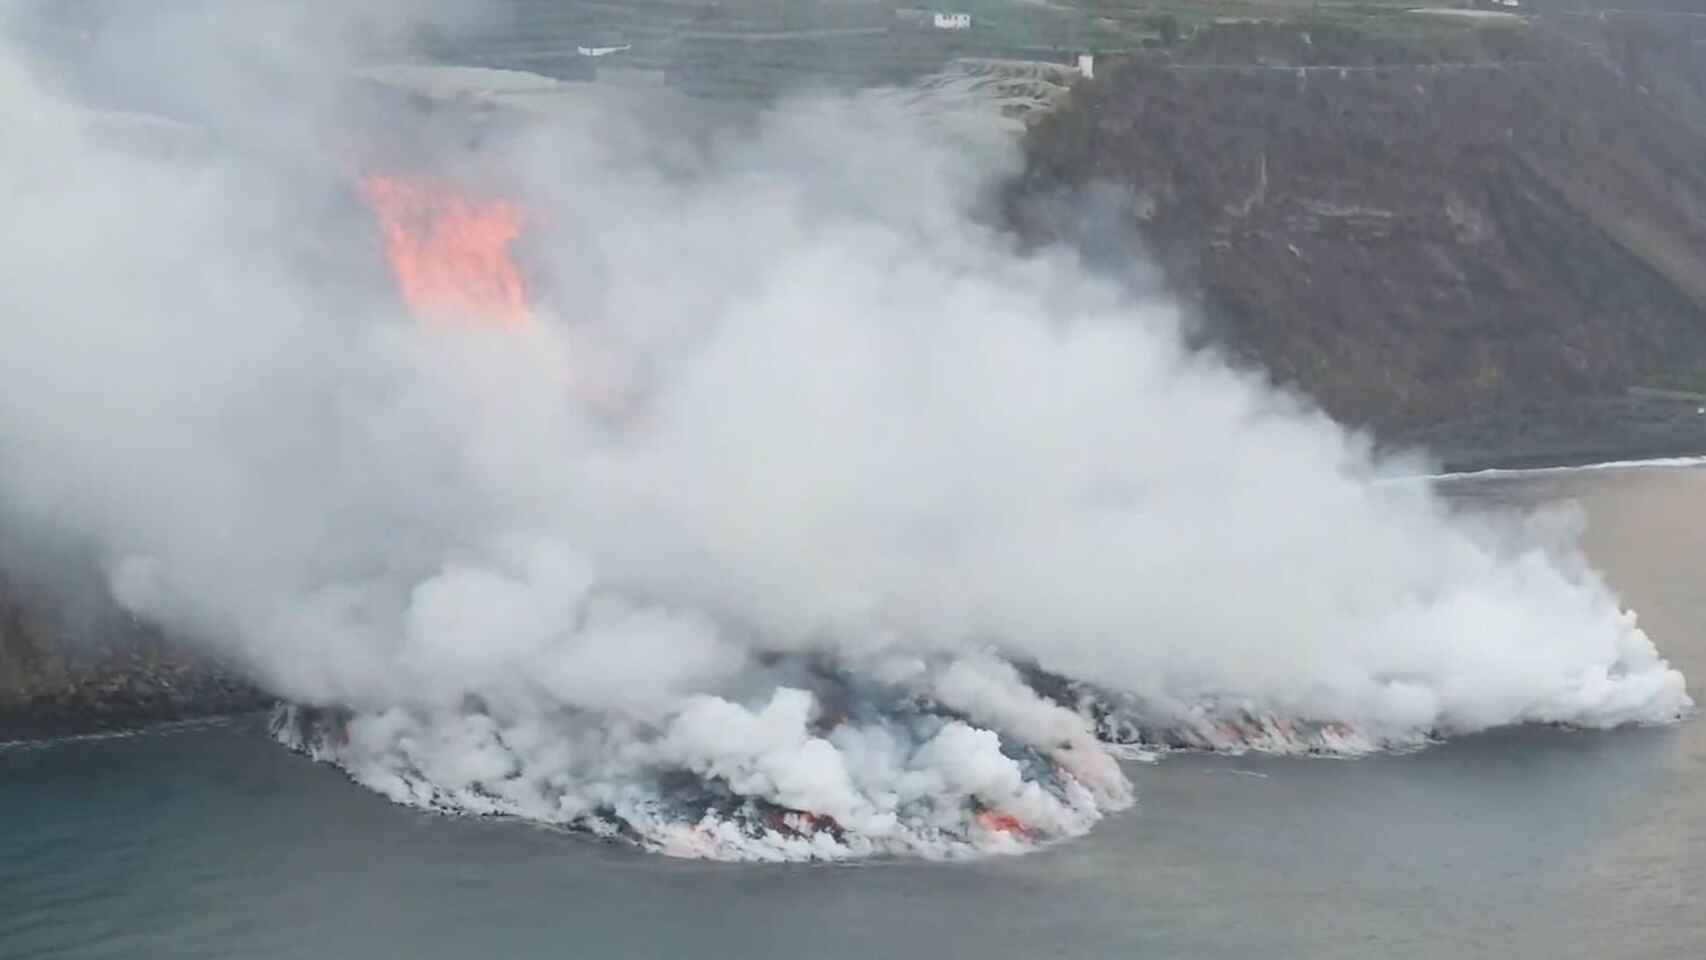 las emanaciones del volcan cumbre vieja forman un delta de lava laverdaddemonagas.com 615699318 210205568 1706x960 1